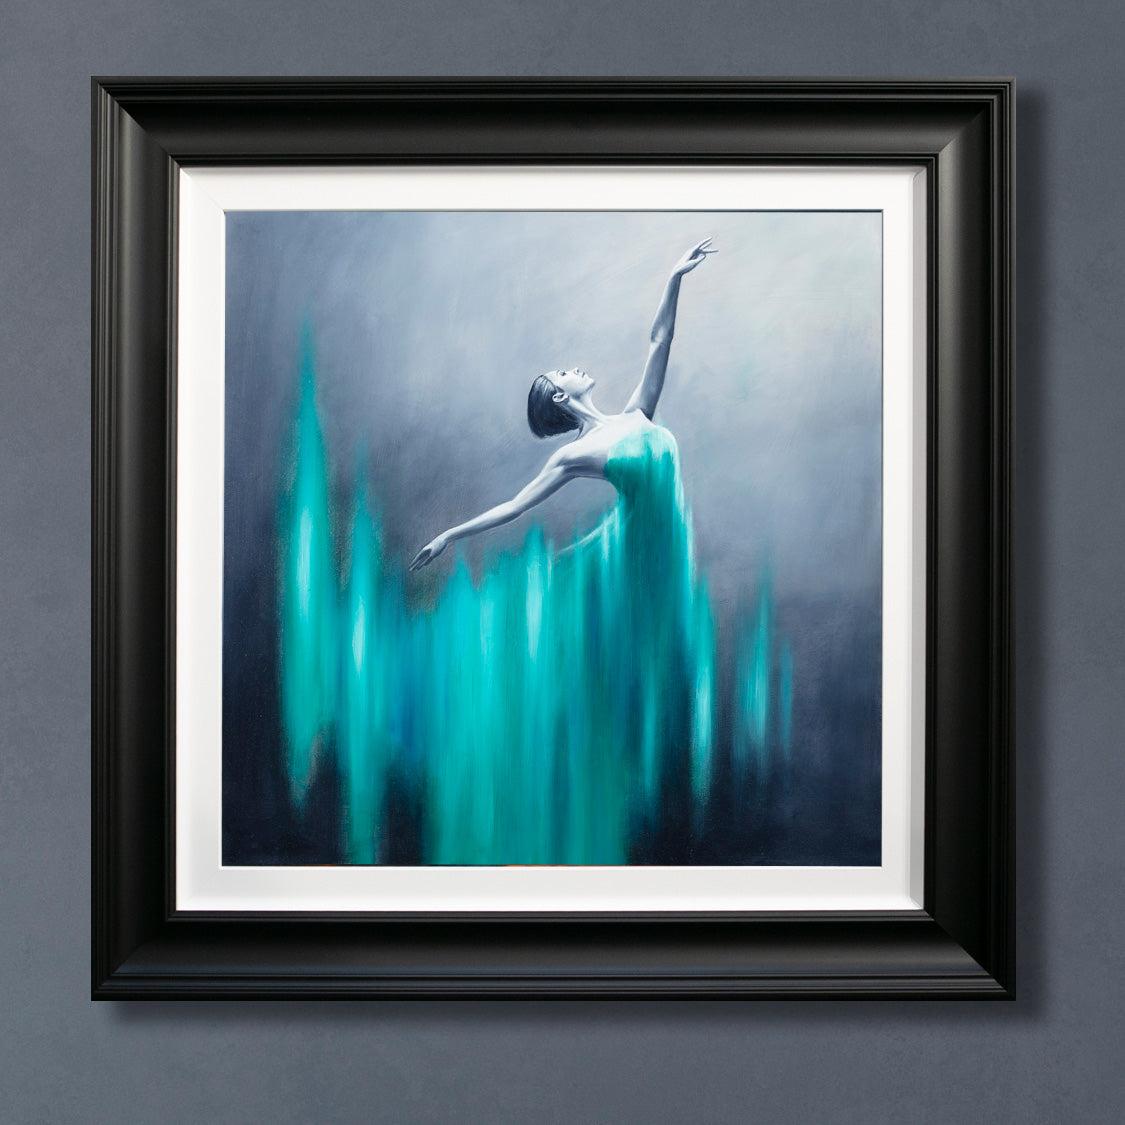 Ben Payne - 'Emerald Dancer' - Framed Limited Edition